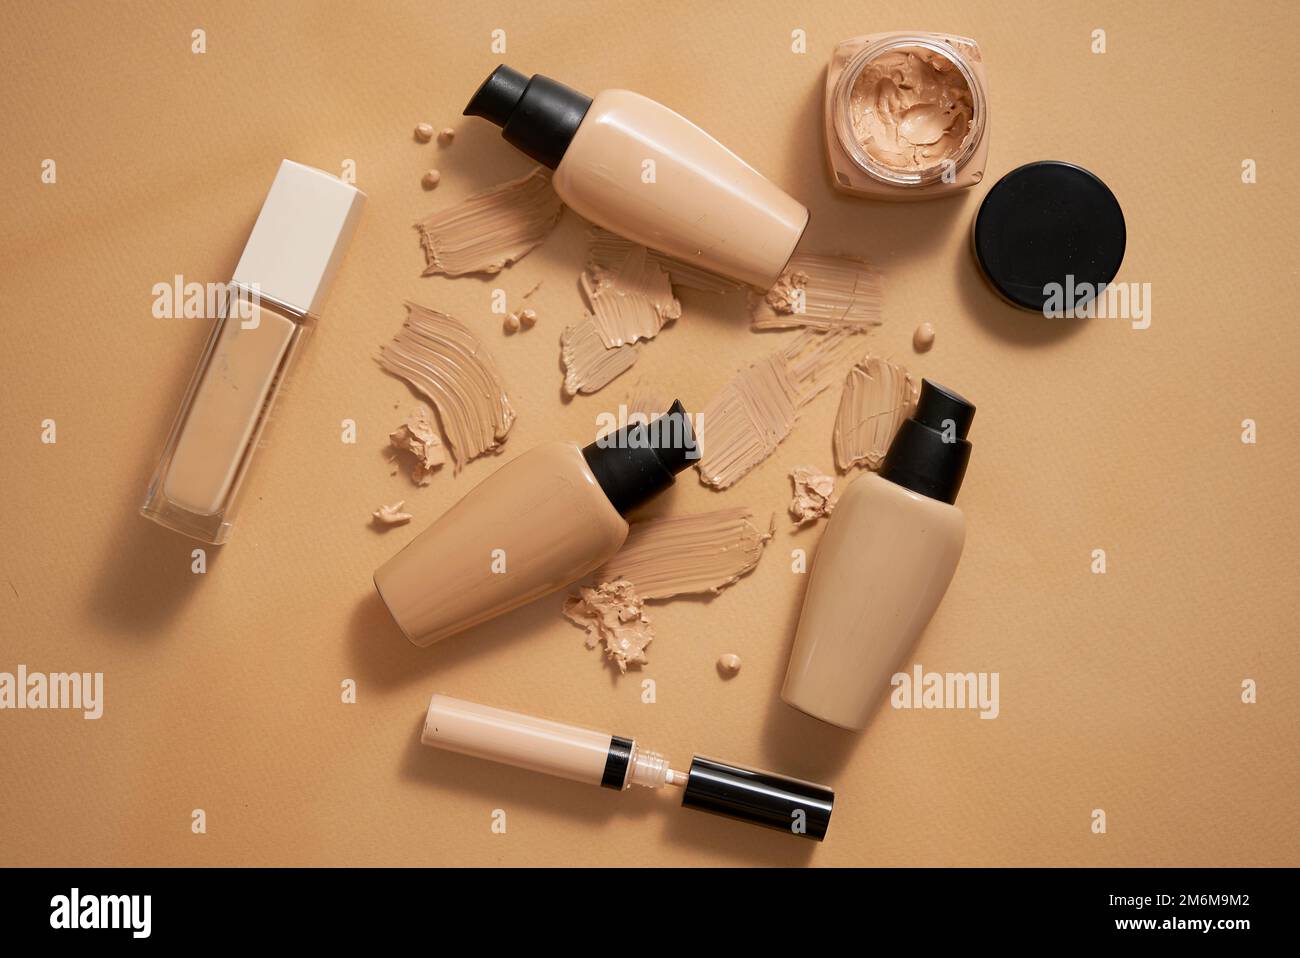 Bottiglie di fondazione makeup e campioni su sfondo beige Foto Stock